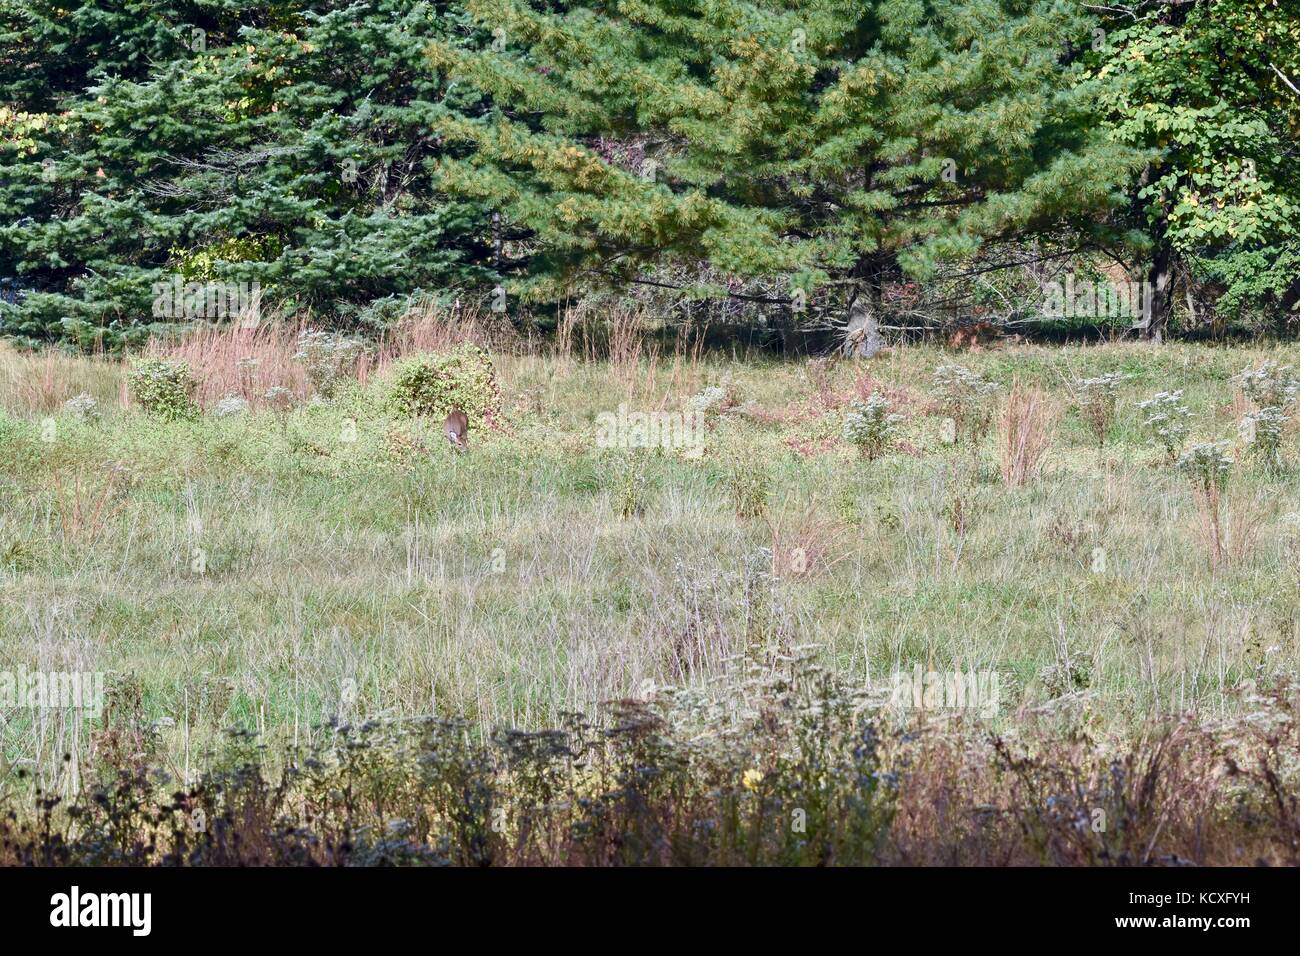 Open field with deer grazing Stock Photo